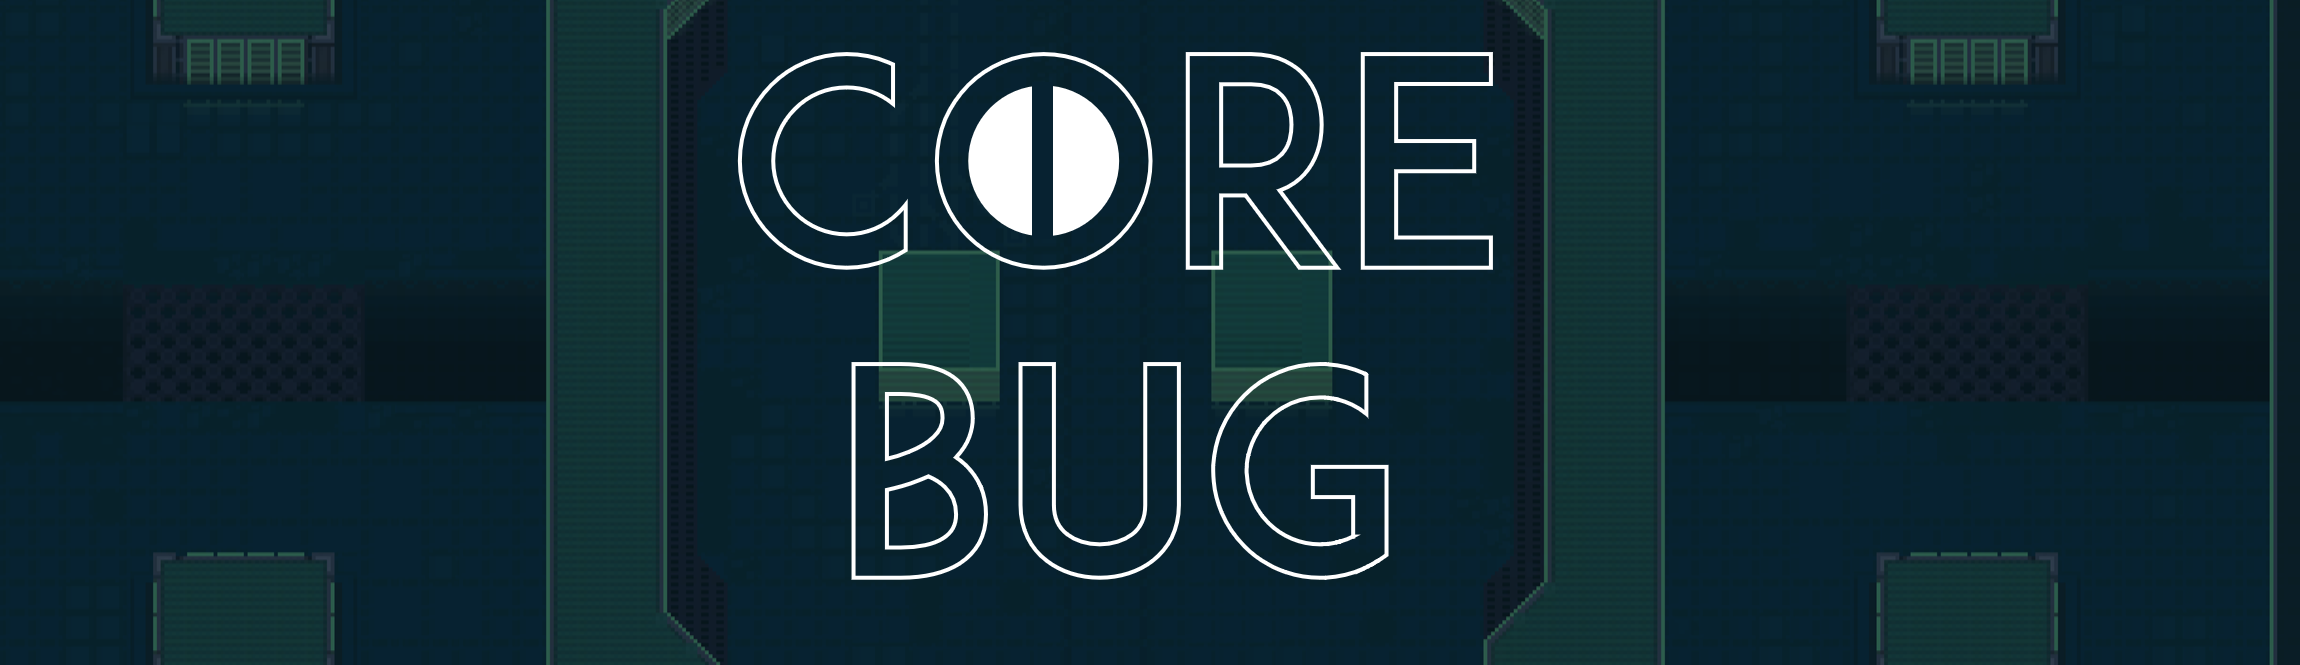 Core Bug -Prototype Demo